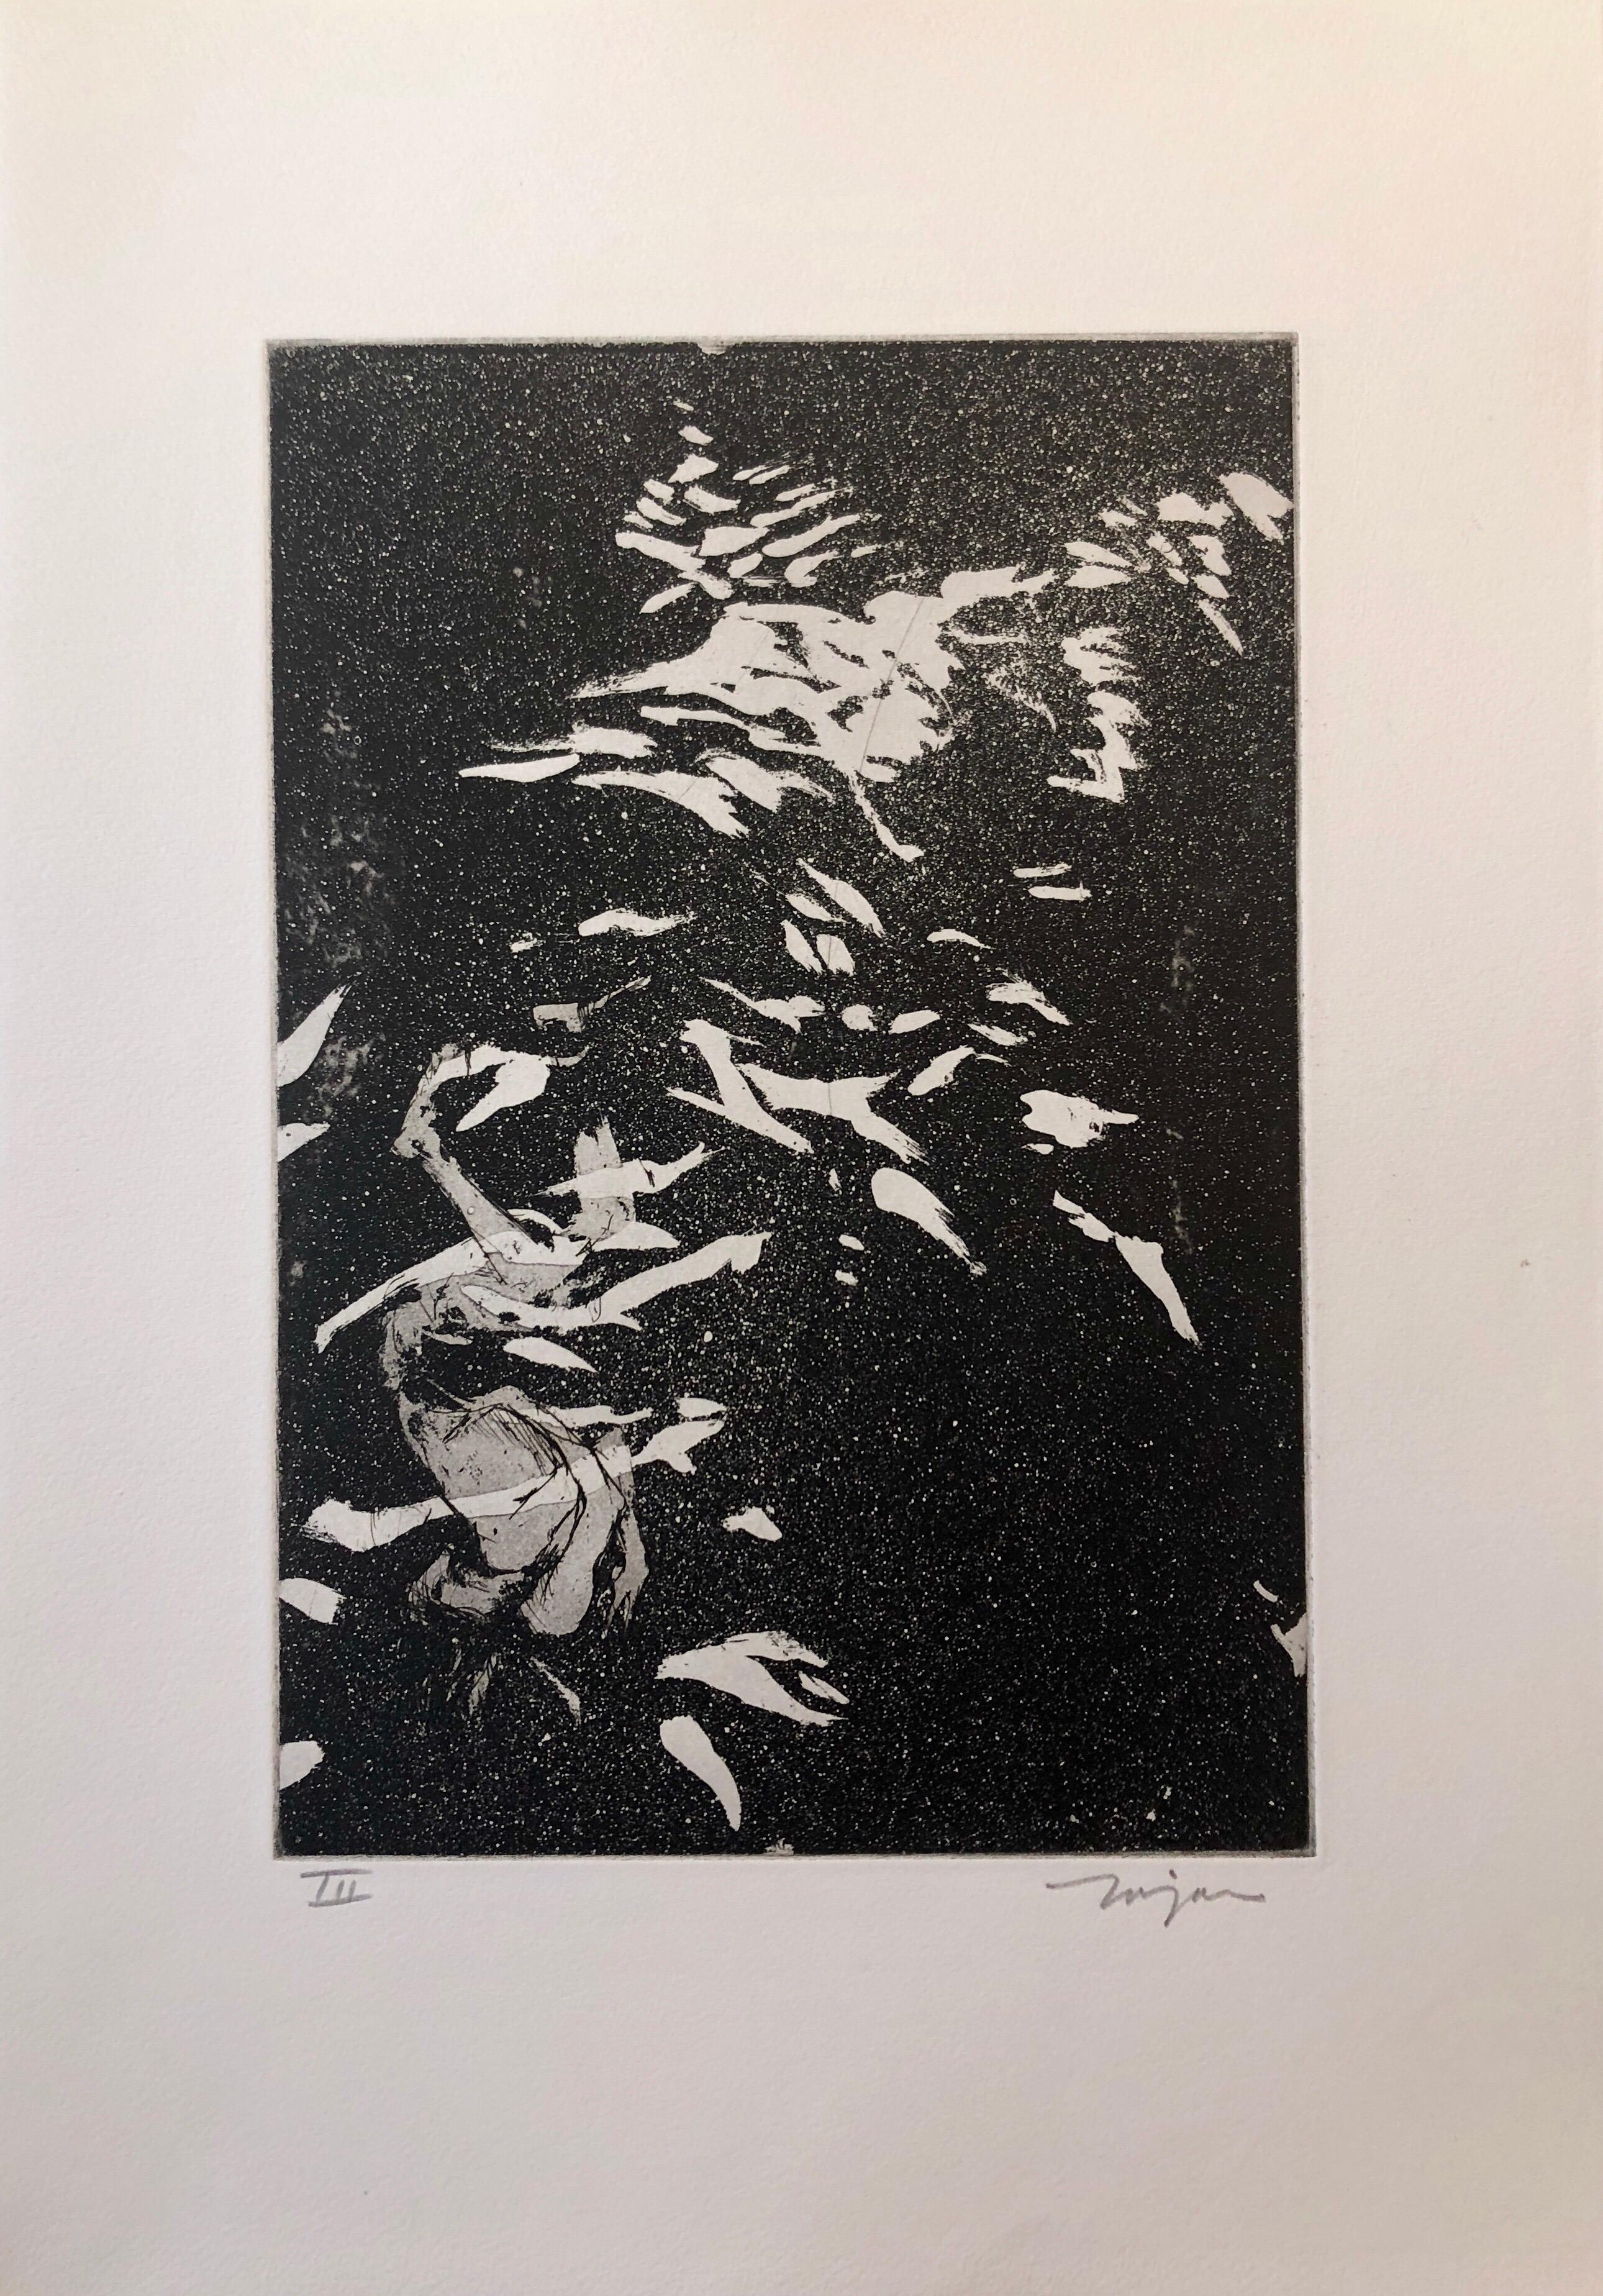 Jack Zajac, Amerikaner, geboren 1929
1964 Radierung und Aquatinta, handgedruckt auf Fabriano-Papier, mit Bleistift signiert und mit Auflage versehen. 
Ausgabe Römische Ziffer III
Bild: 12 9/16 x 8 5/8 in. (31,9 x 21,9 cm)
Blatt: 20 x 14 Zoll (50,8 x